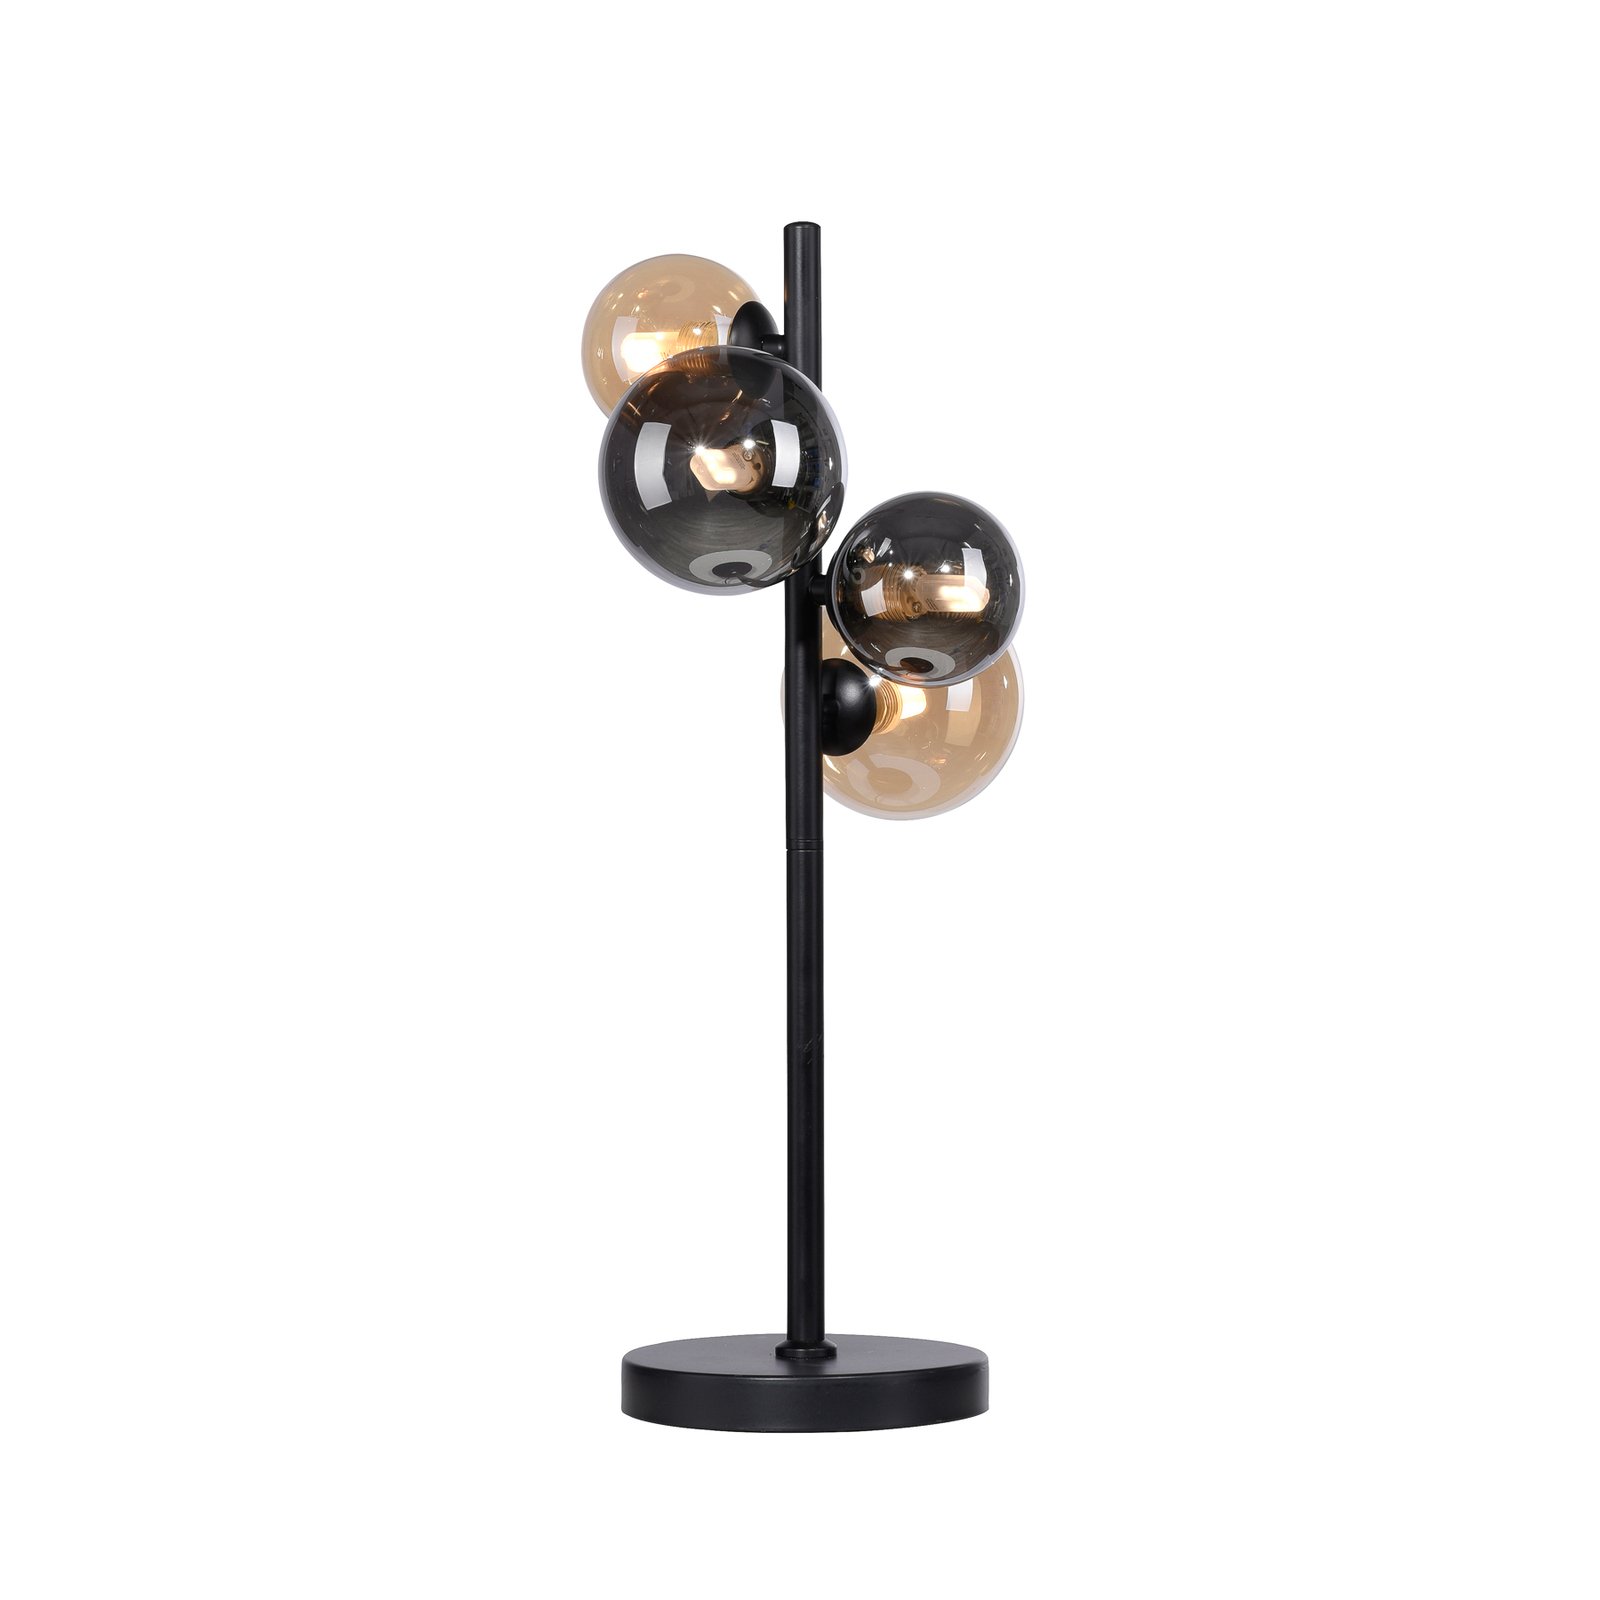 Paul Neuhaus Popsicle stolová lampa